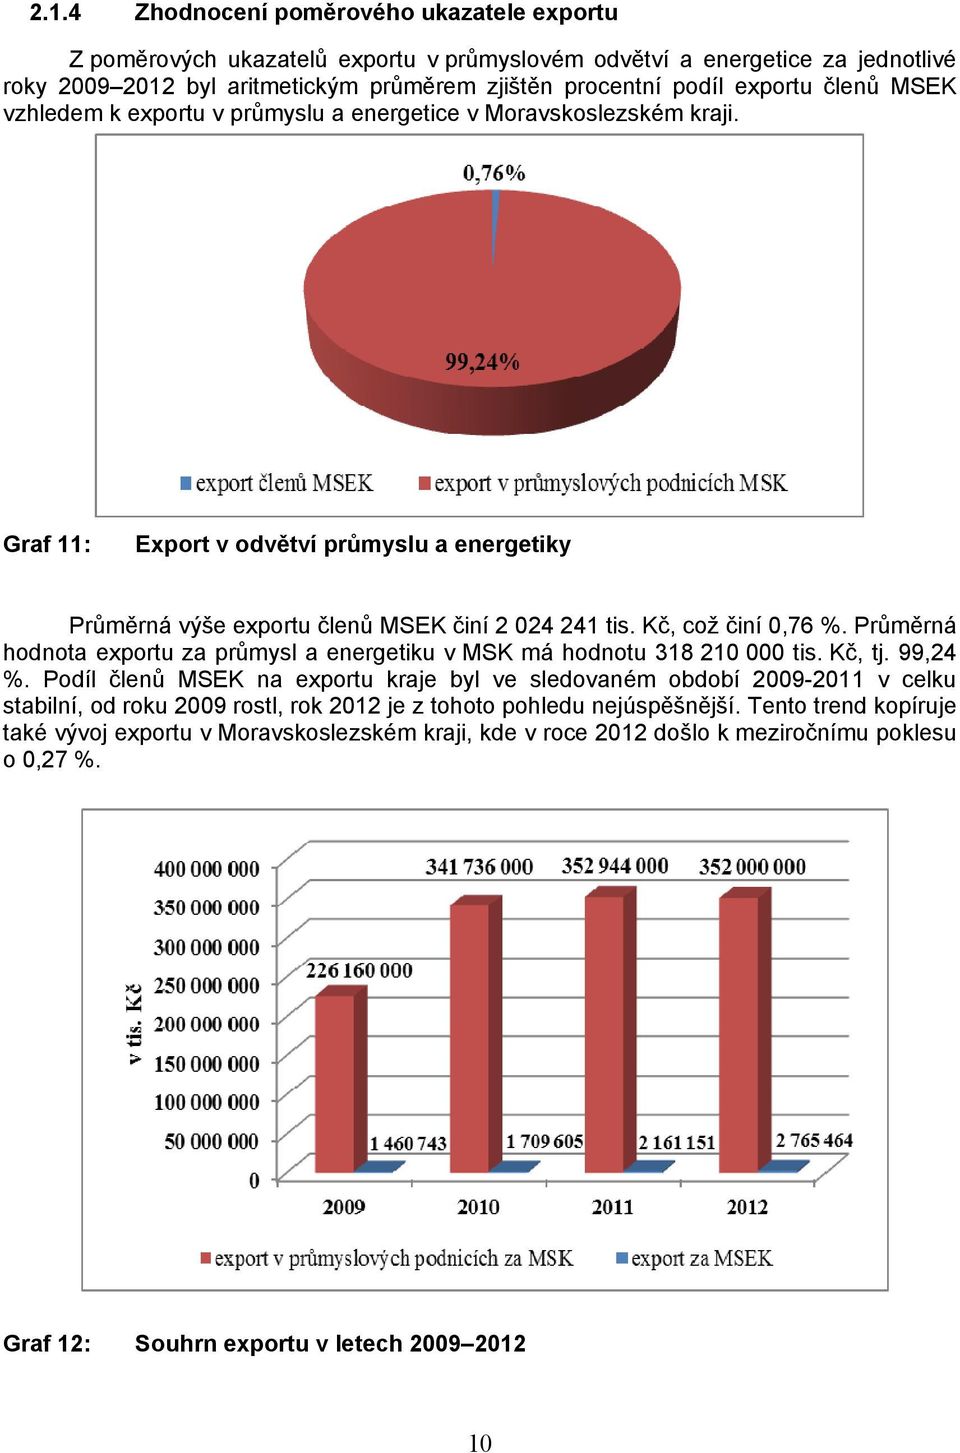 Kč, což činí 0,76 %. Průměrná hodnota exportu za průmysl a energetiku v MSK má hodnotu 318 210 000 tis. Kč, tj. 99,24 %.